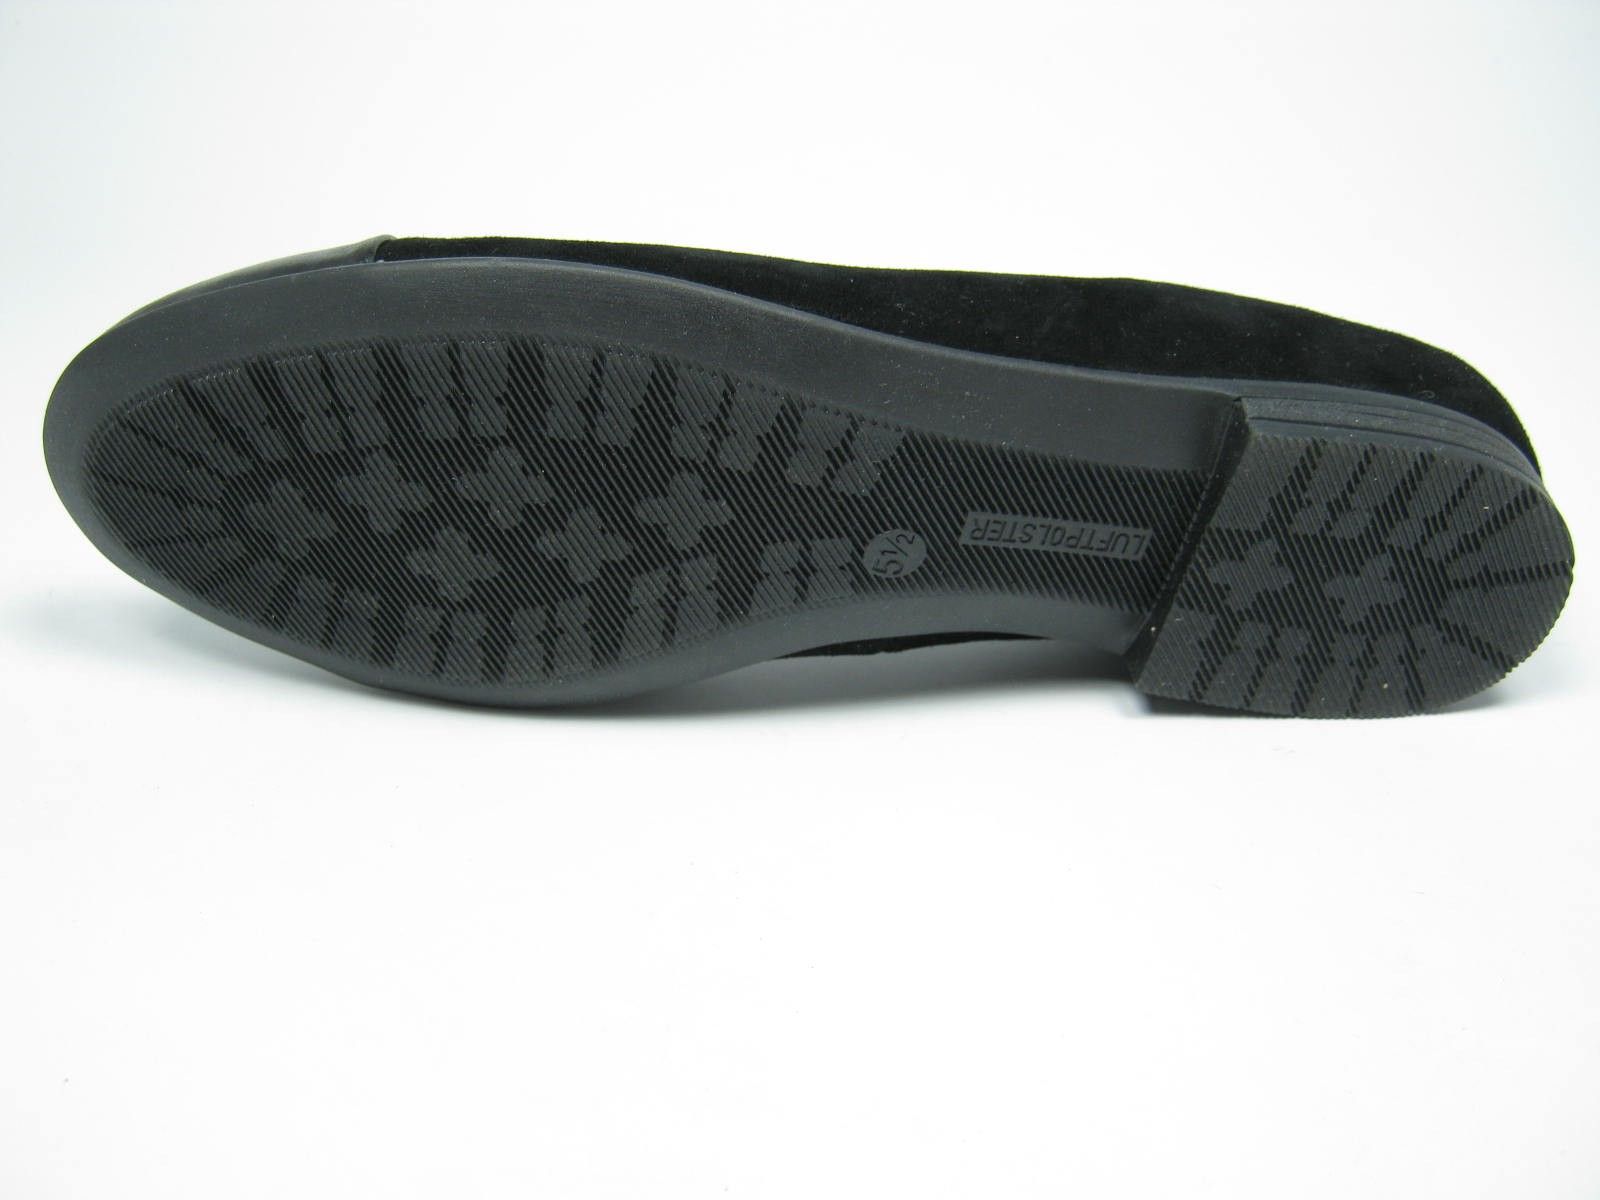 Schuh von ARA, 5½